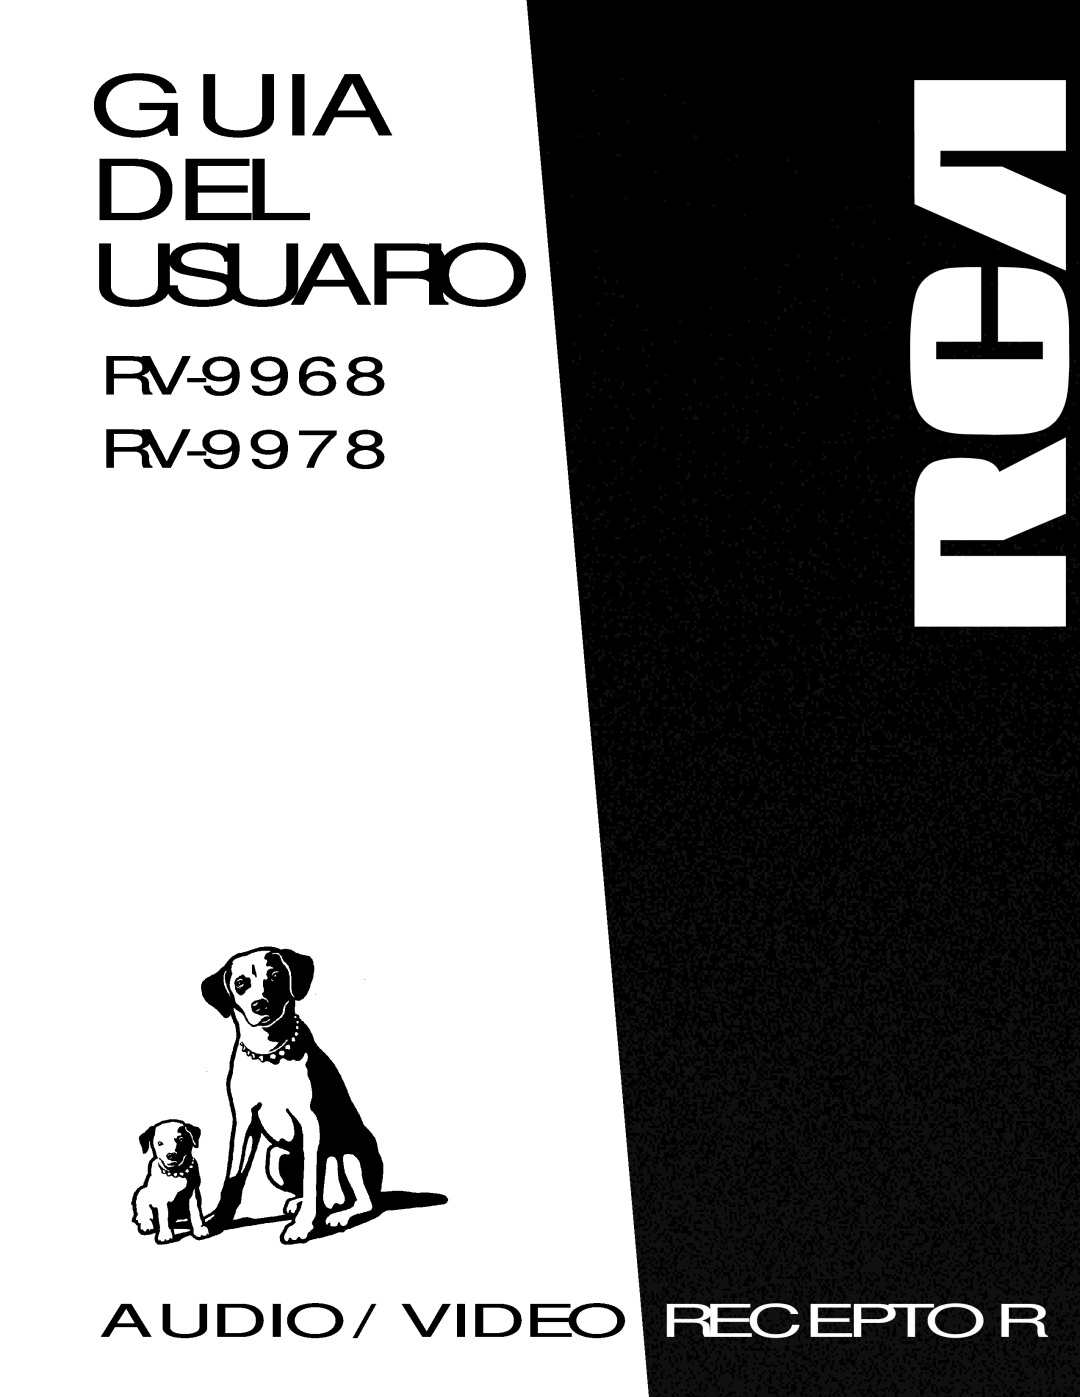 RCA manual Guia Del Usuario, Audio/Video Receptor, RV-9968 RV-9978 